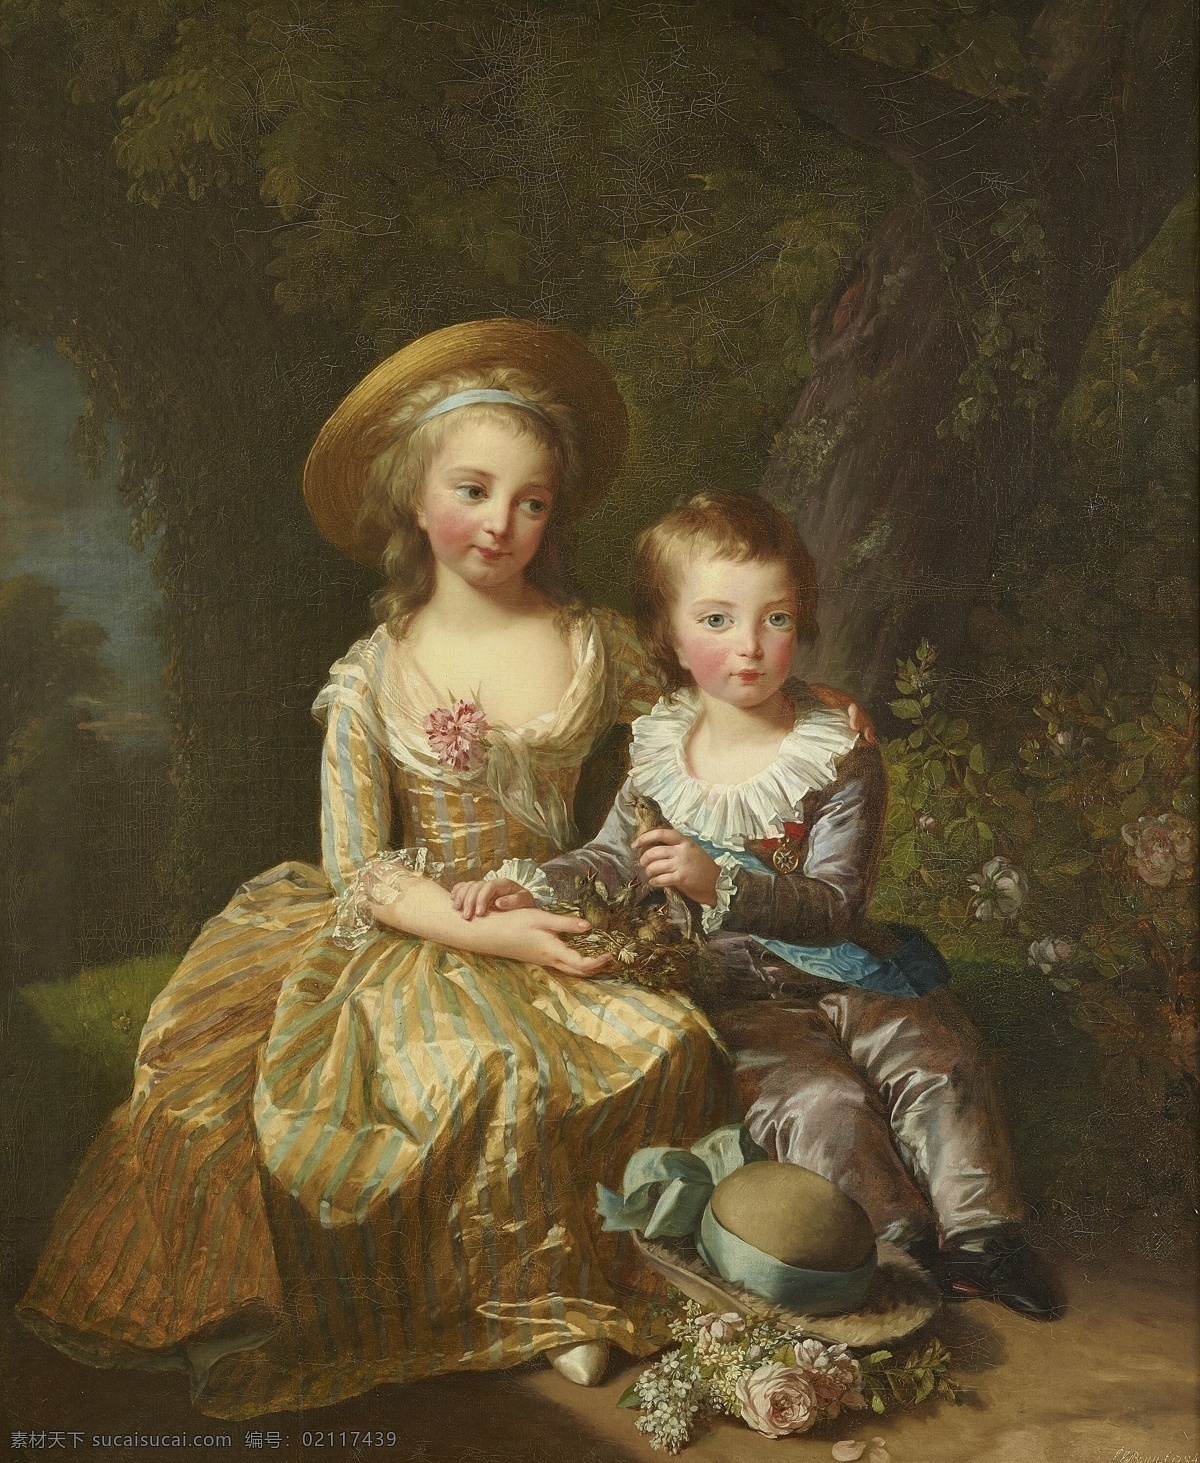 伊丽莎白 维 瑞 勒布伦 作品 法国女画家 路易十六 一子一女 玛丽娅公主 路易十七世 童年时期 古典油画 油画 文化艺术 绘画书法